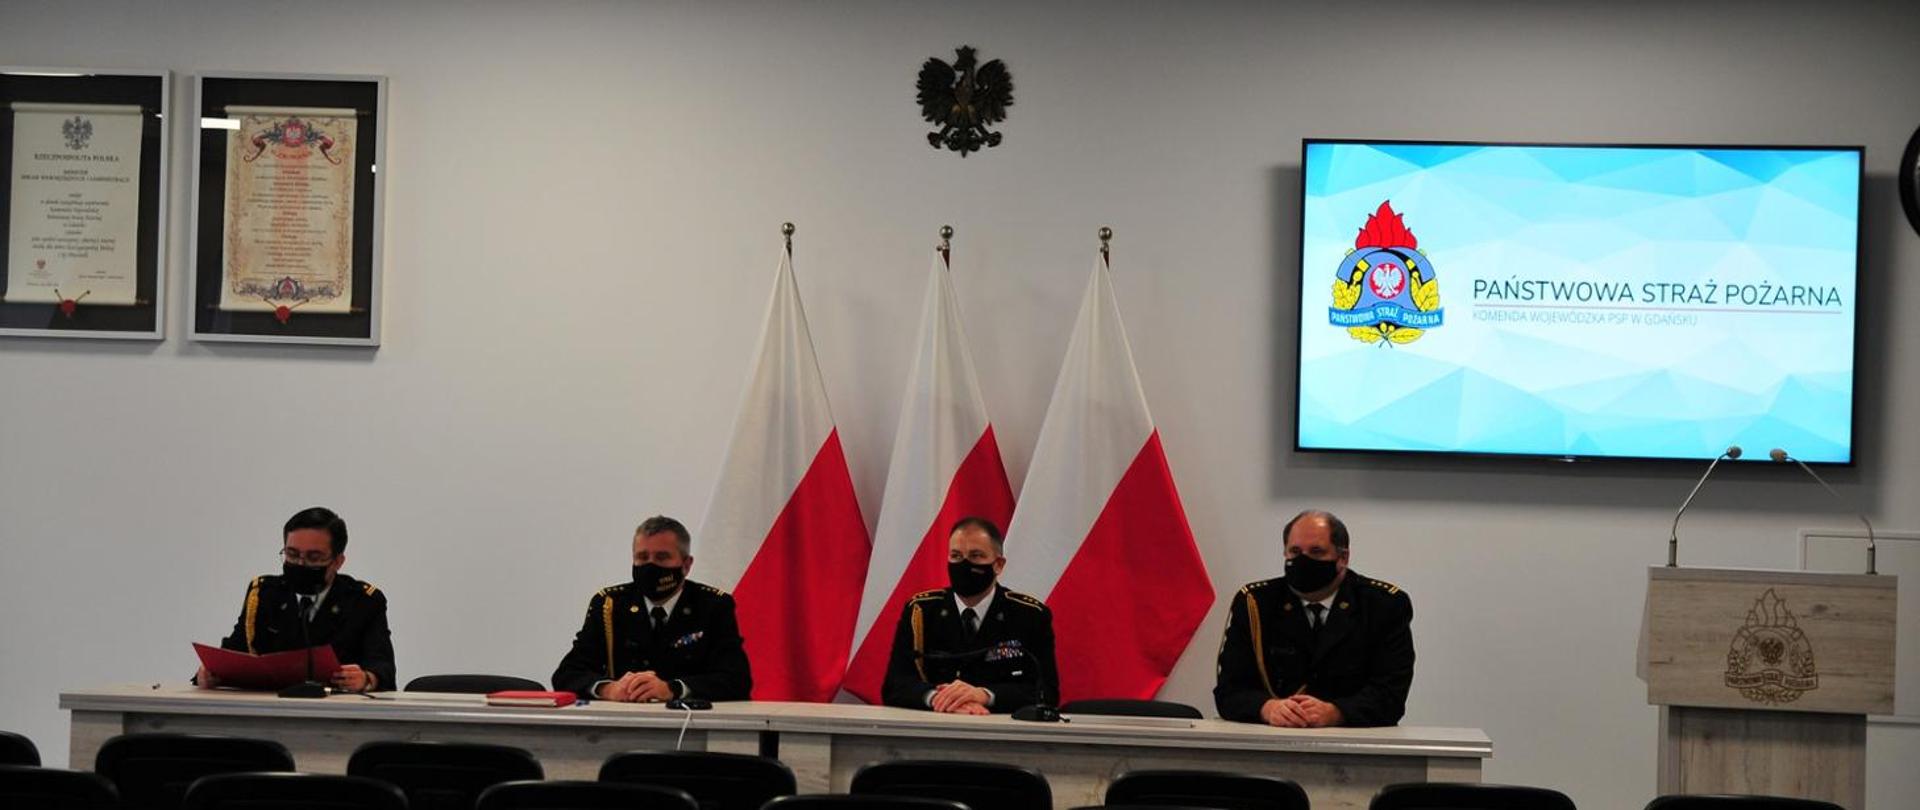 zdjęcie przedstawia uczestników wideokonferencji, kierownictwo Komendy Wojewódzkiej